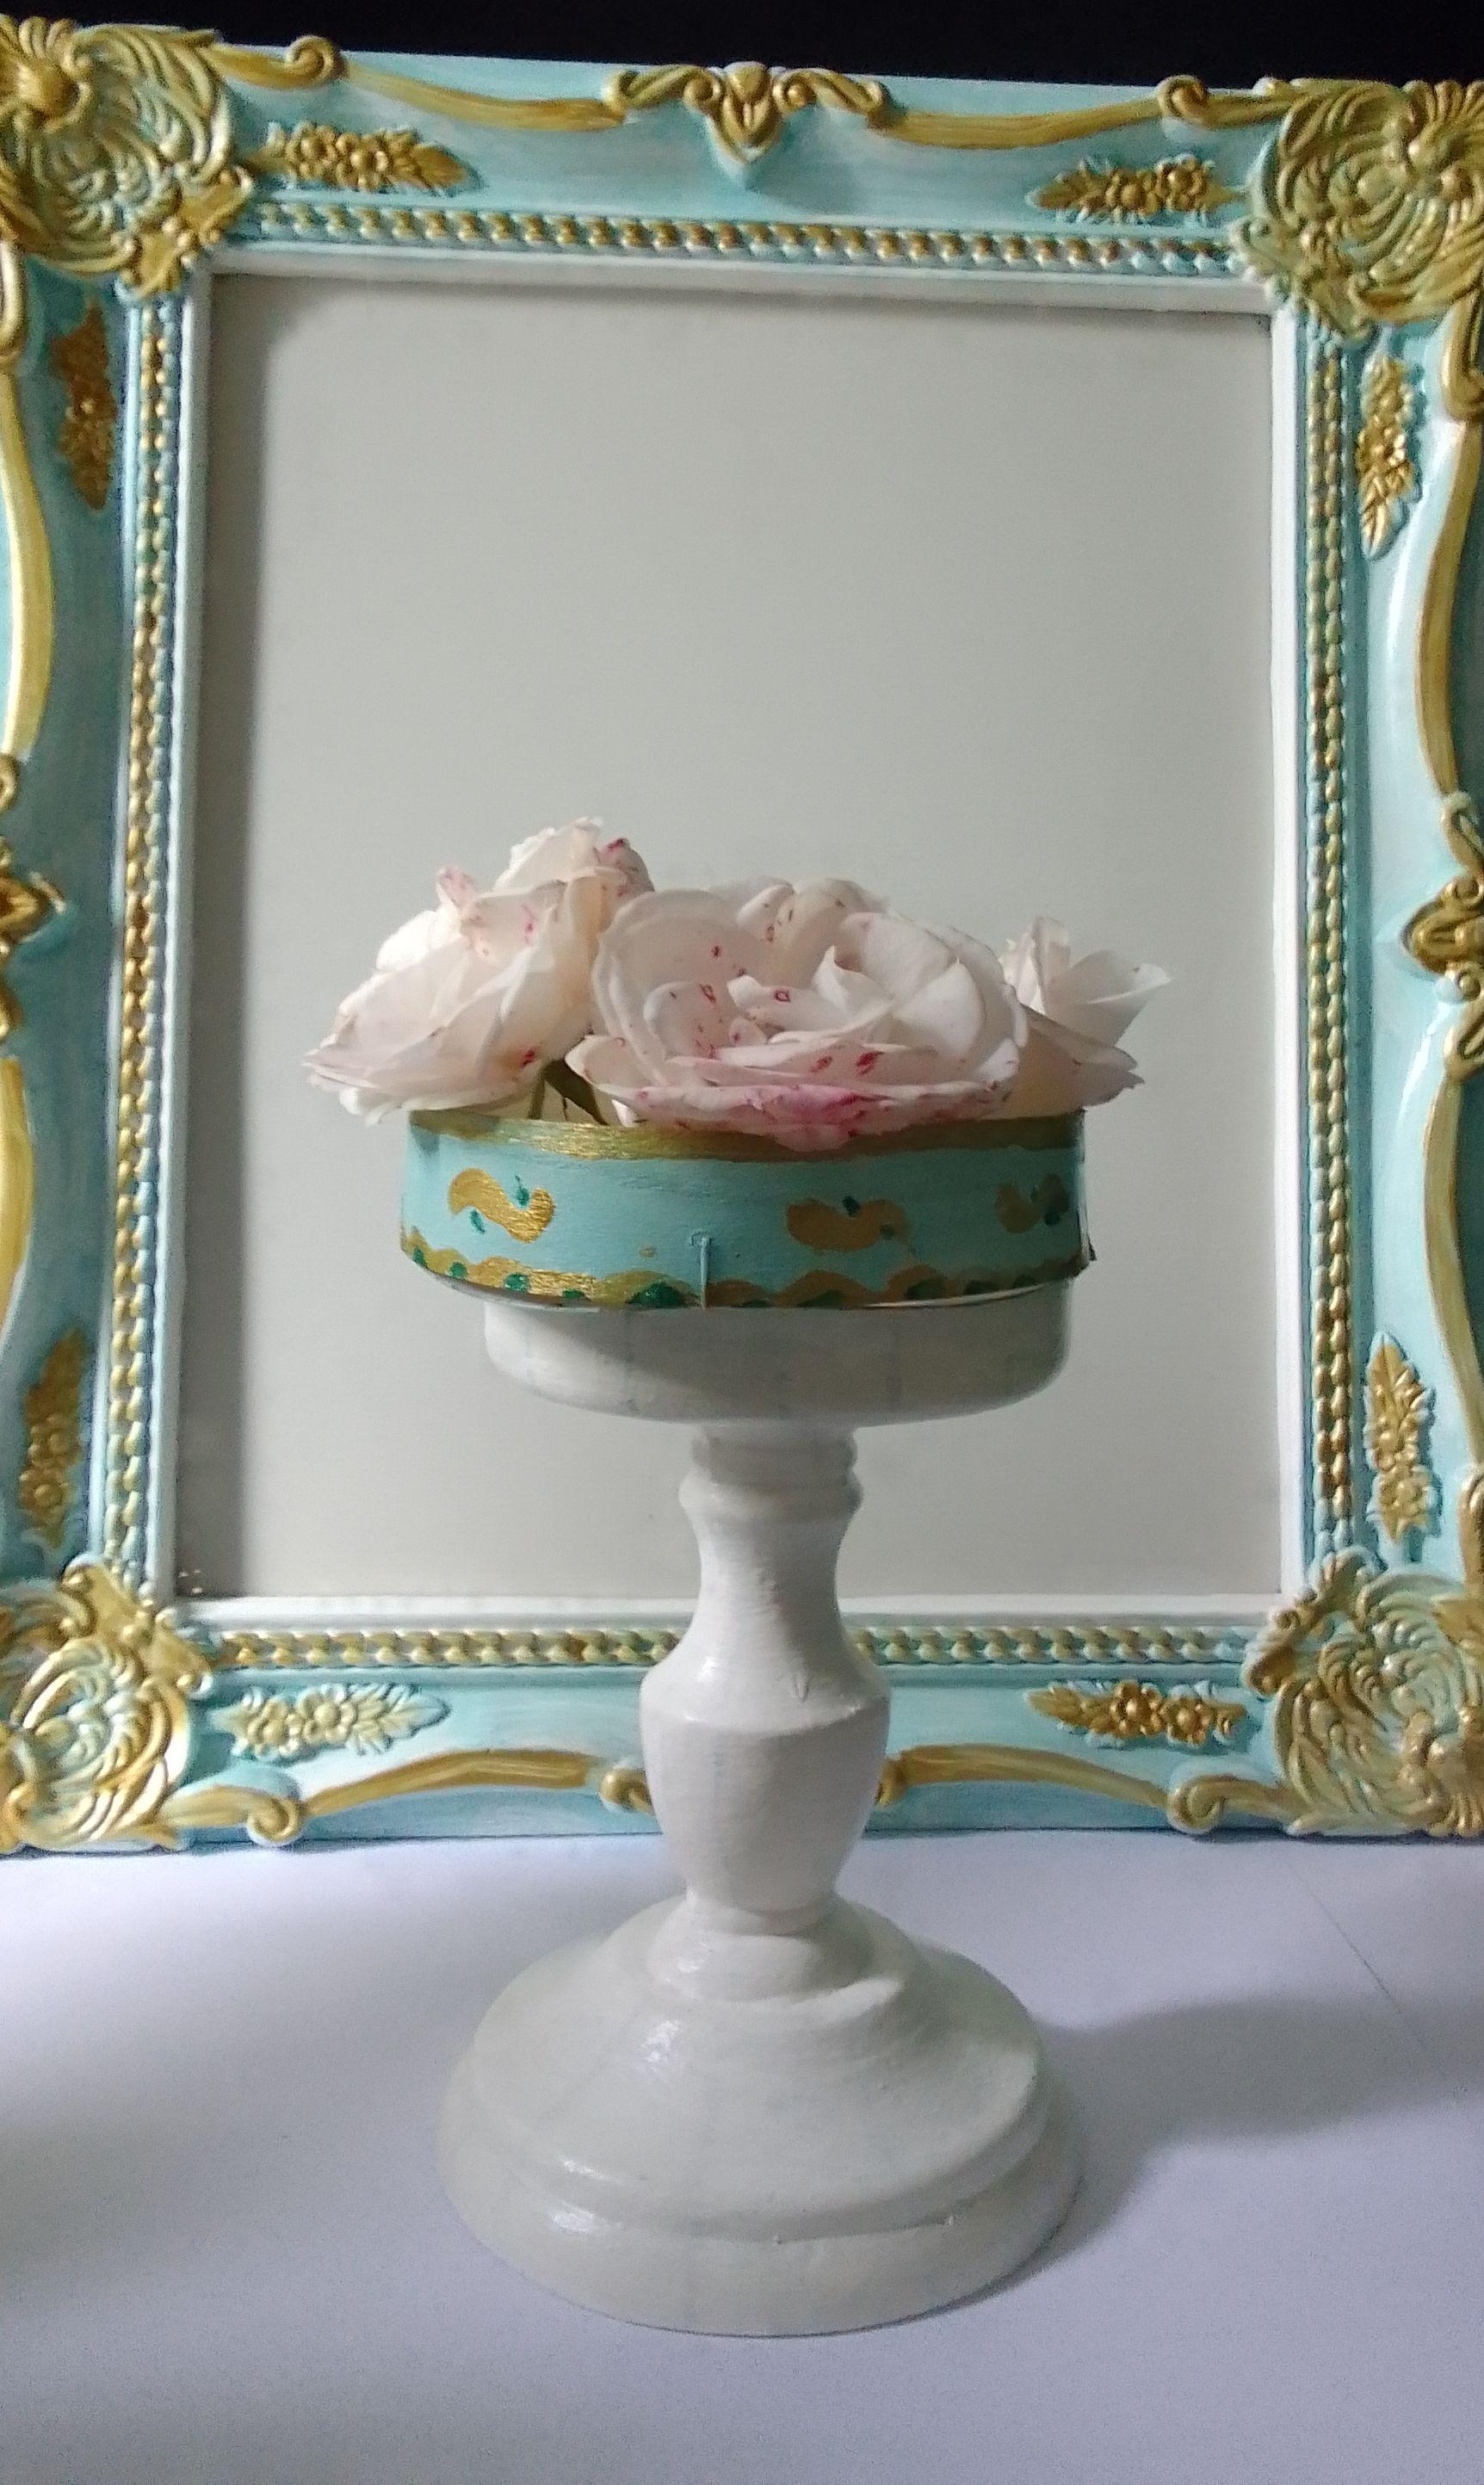 #französische flair #romantisch #bleu #blanc #or #rosen #dekoration